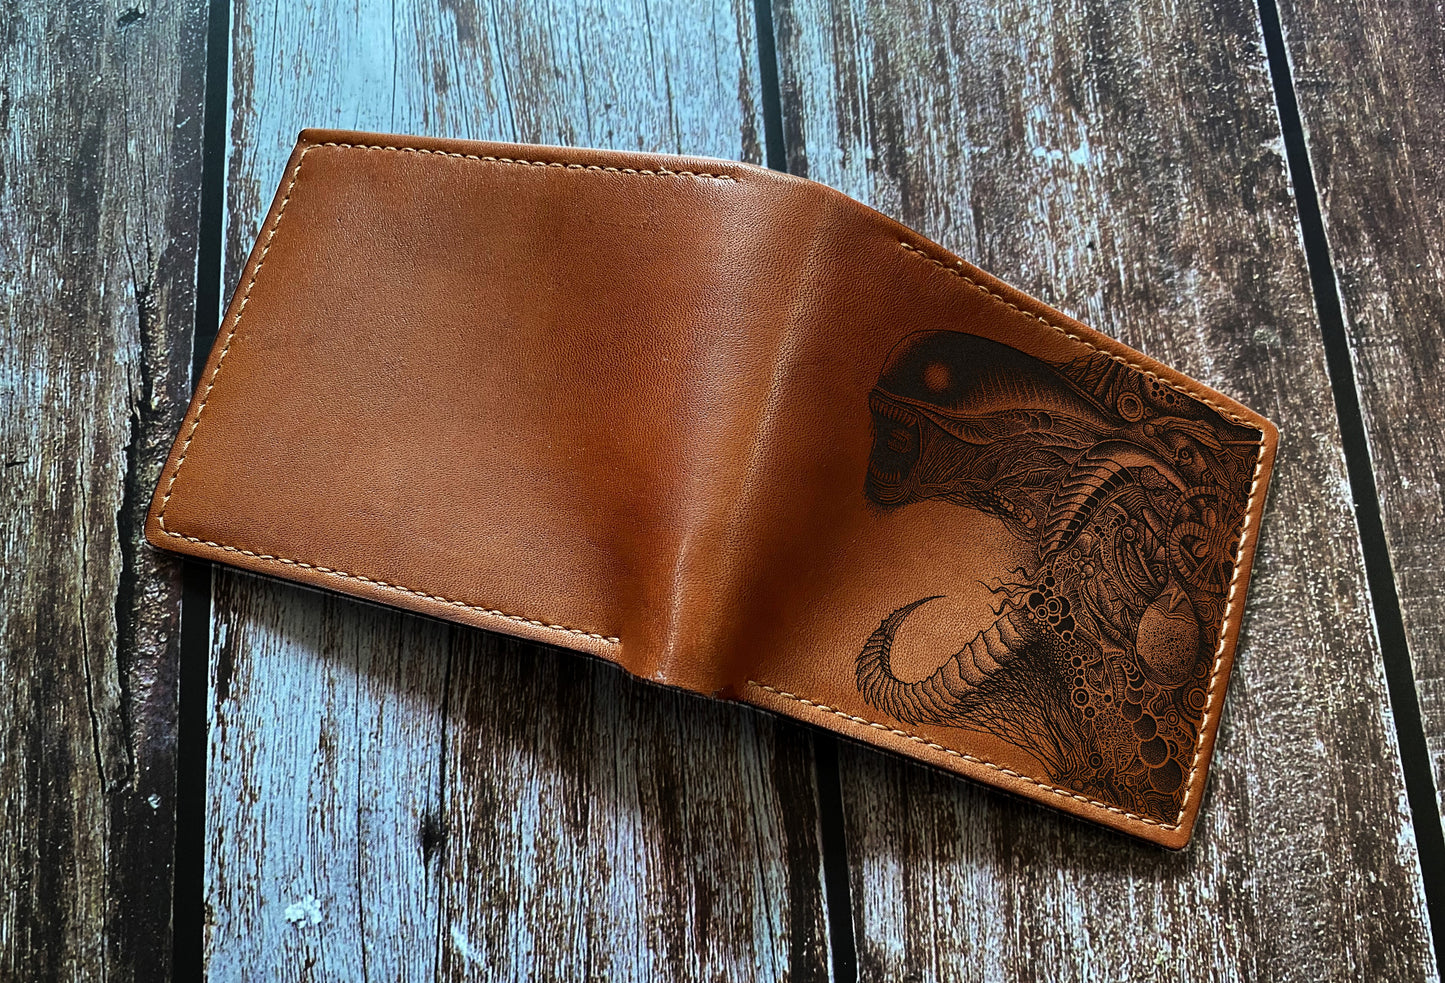 Horror alien leather gift for men, Xenomorph monster art wallet, custom gift ideas for boyfriend